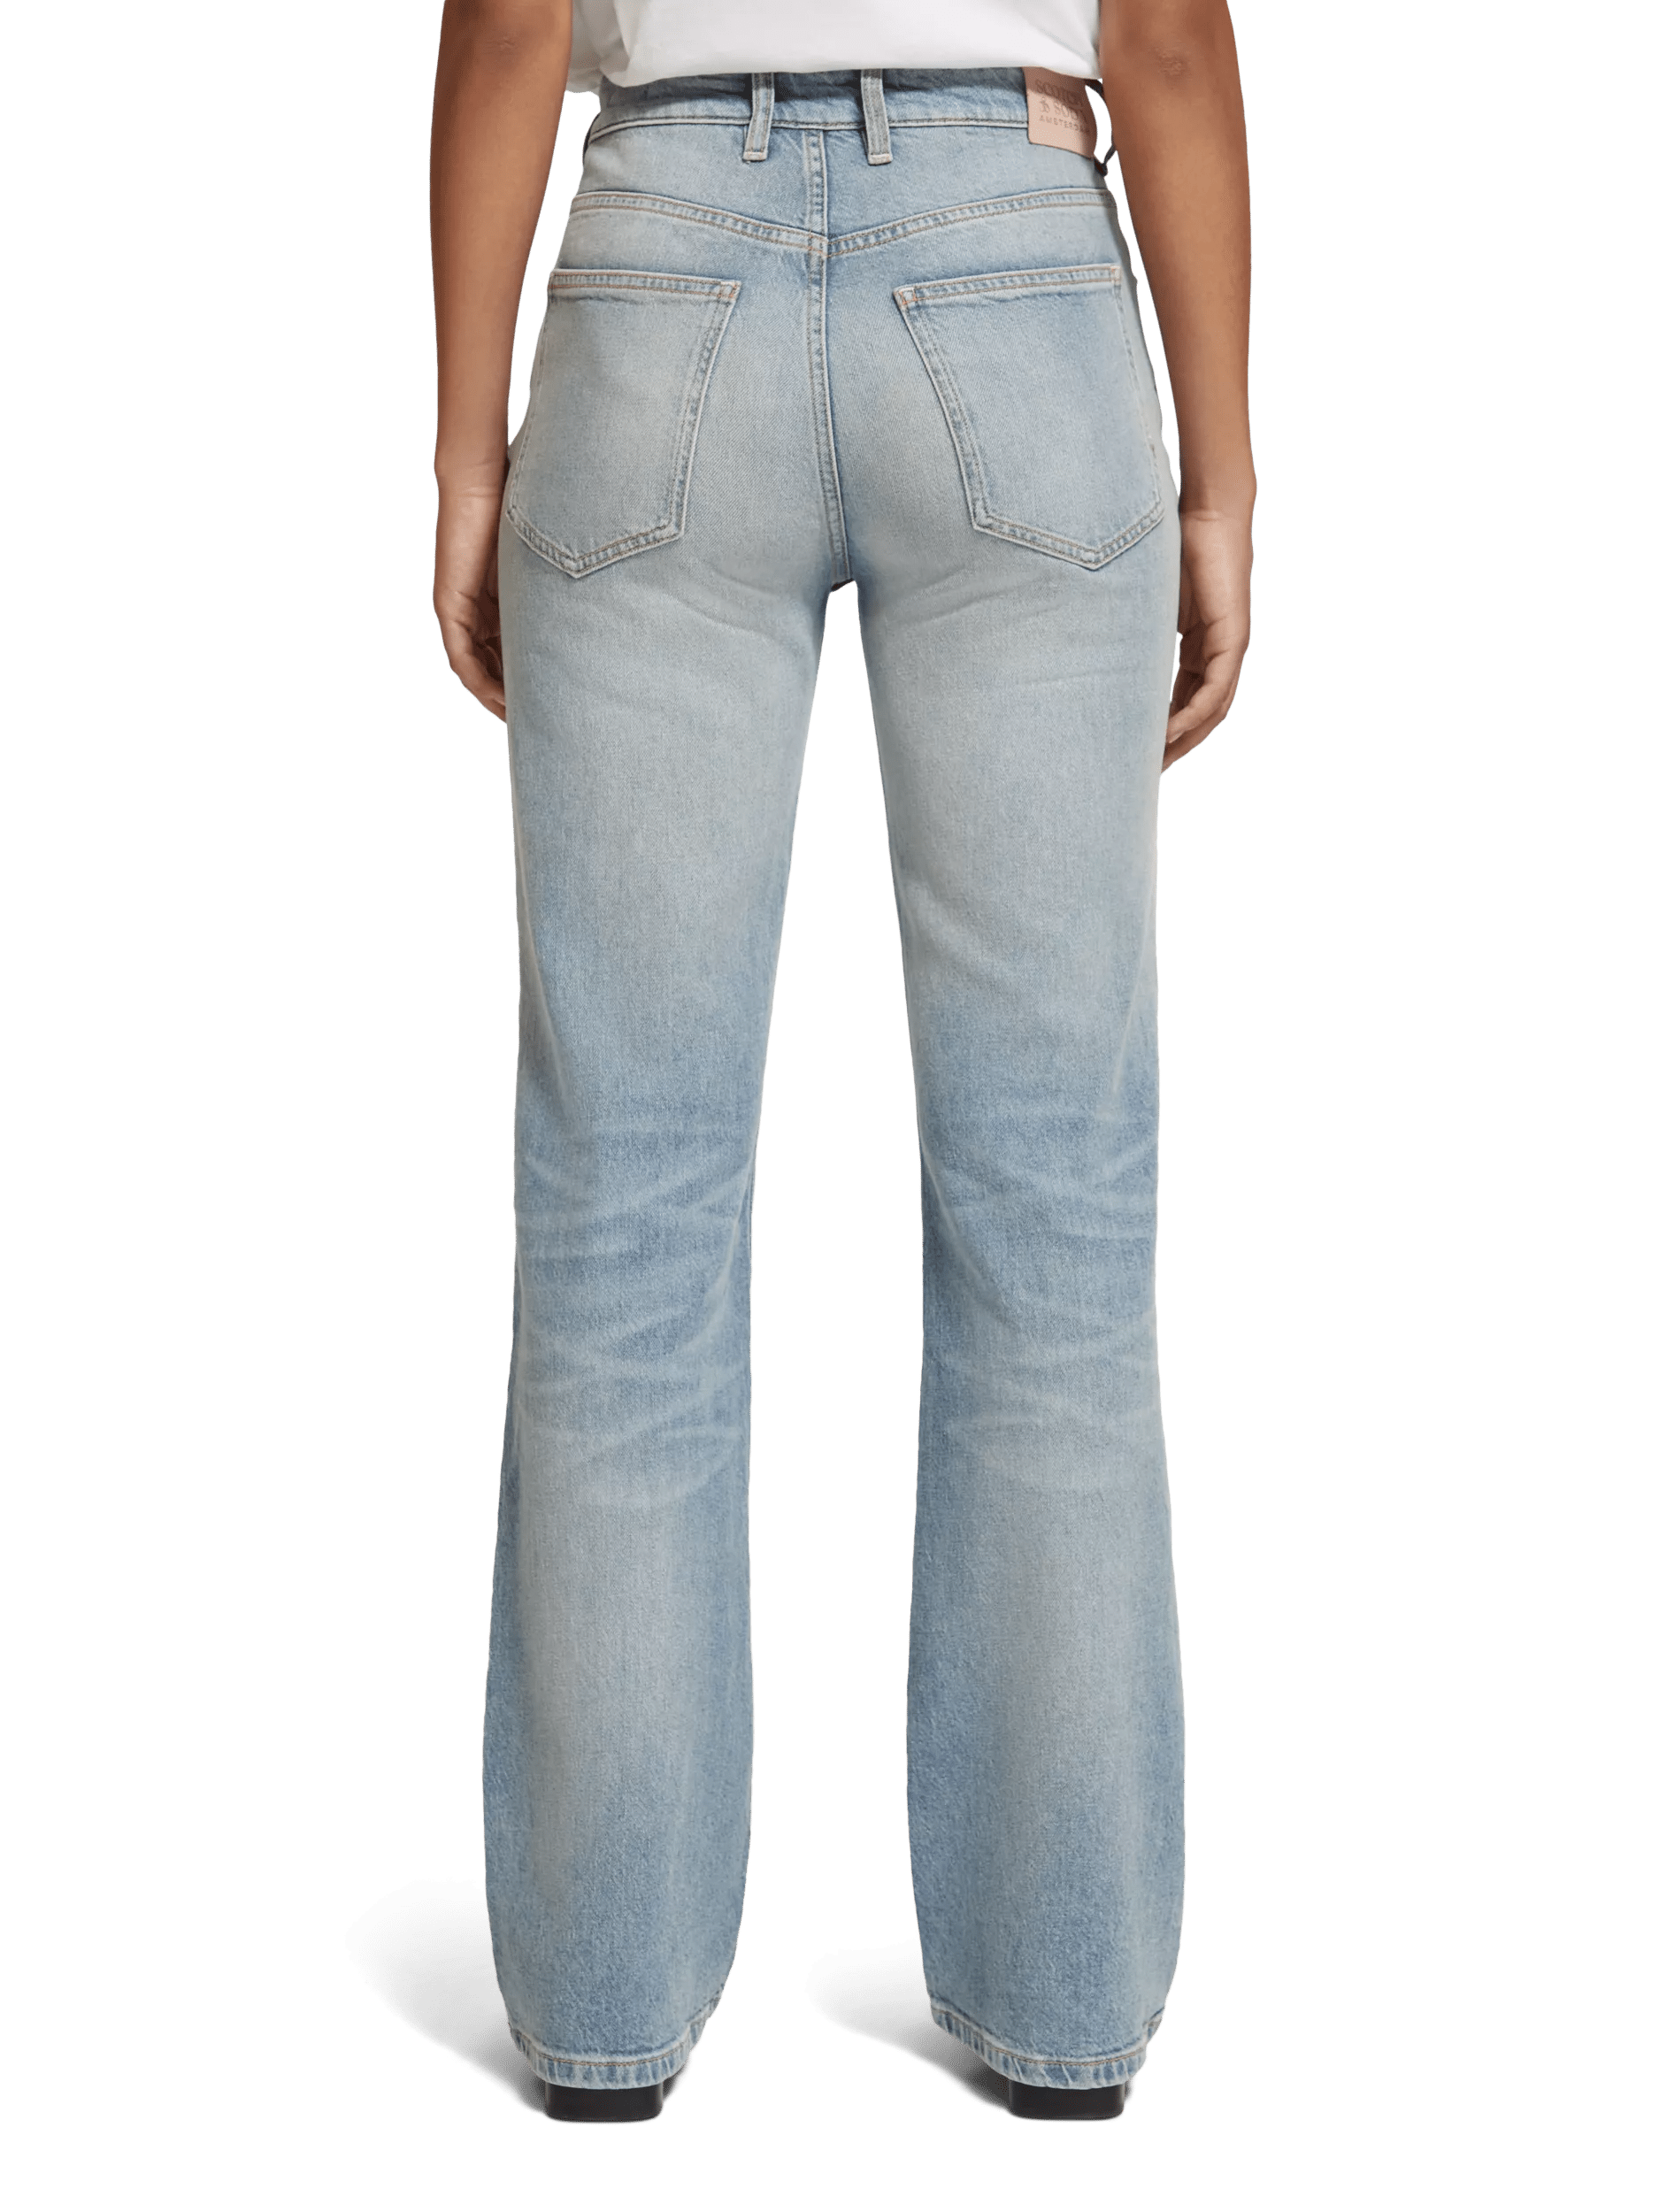 Scotch & Soda Die Glow Bootcut-Jeans mit hohem Bund FIT-BCK